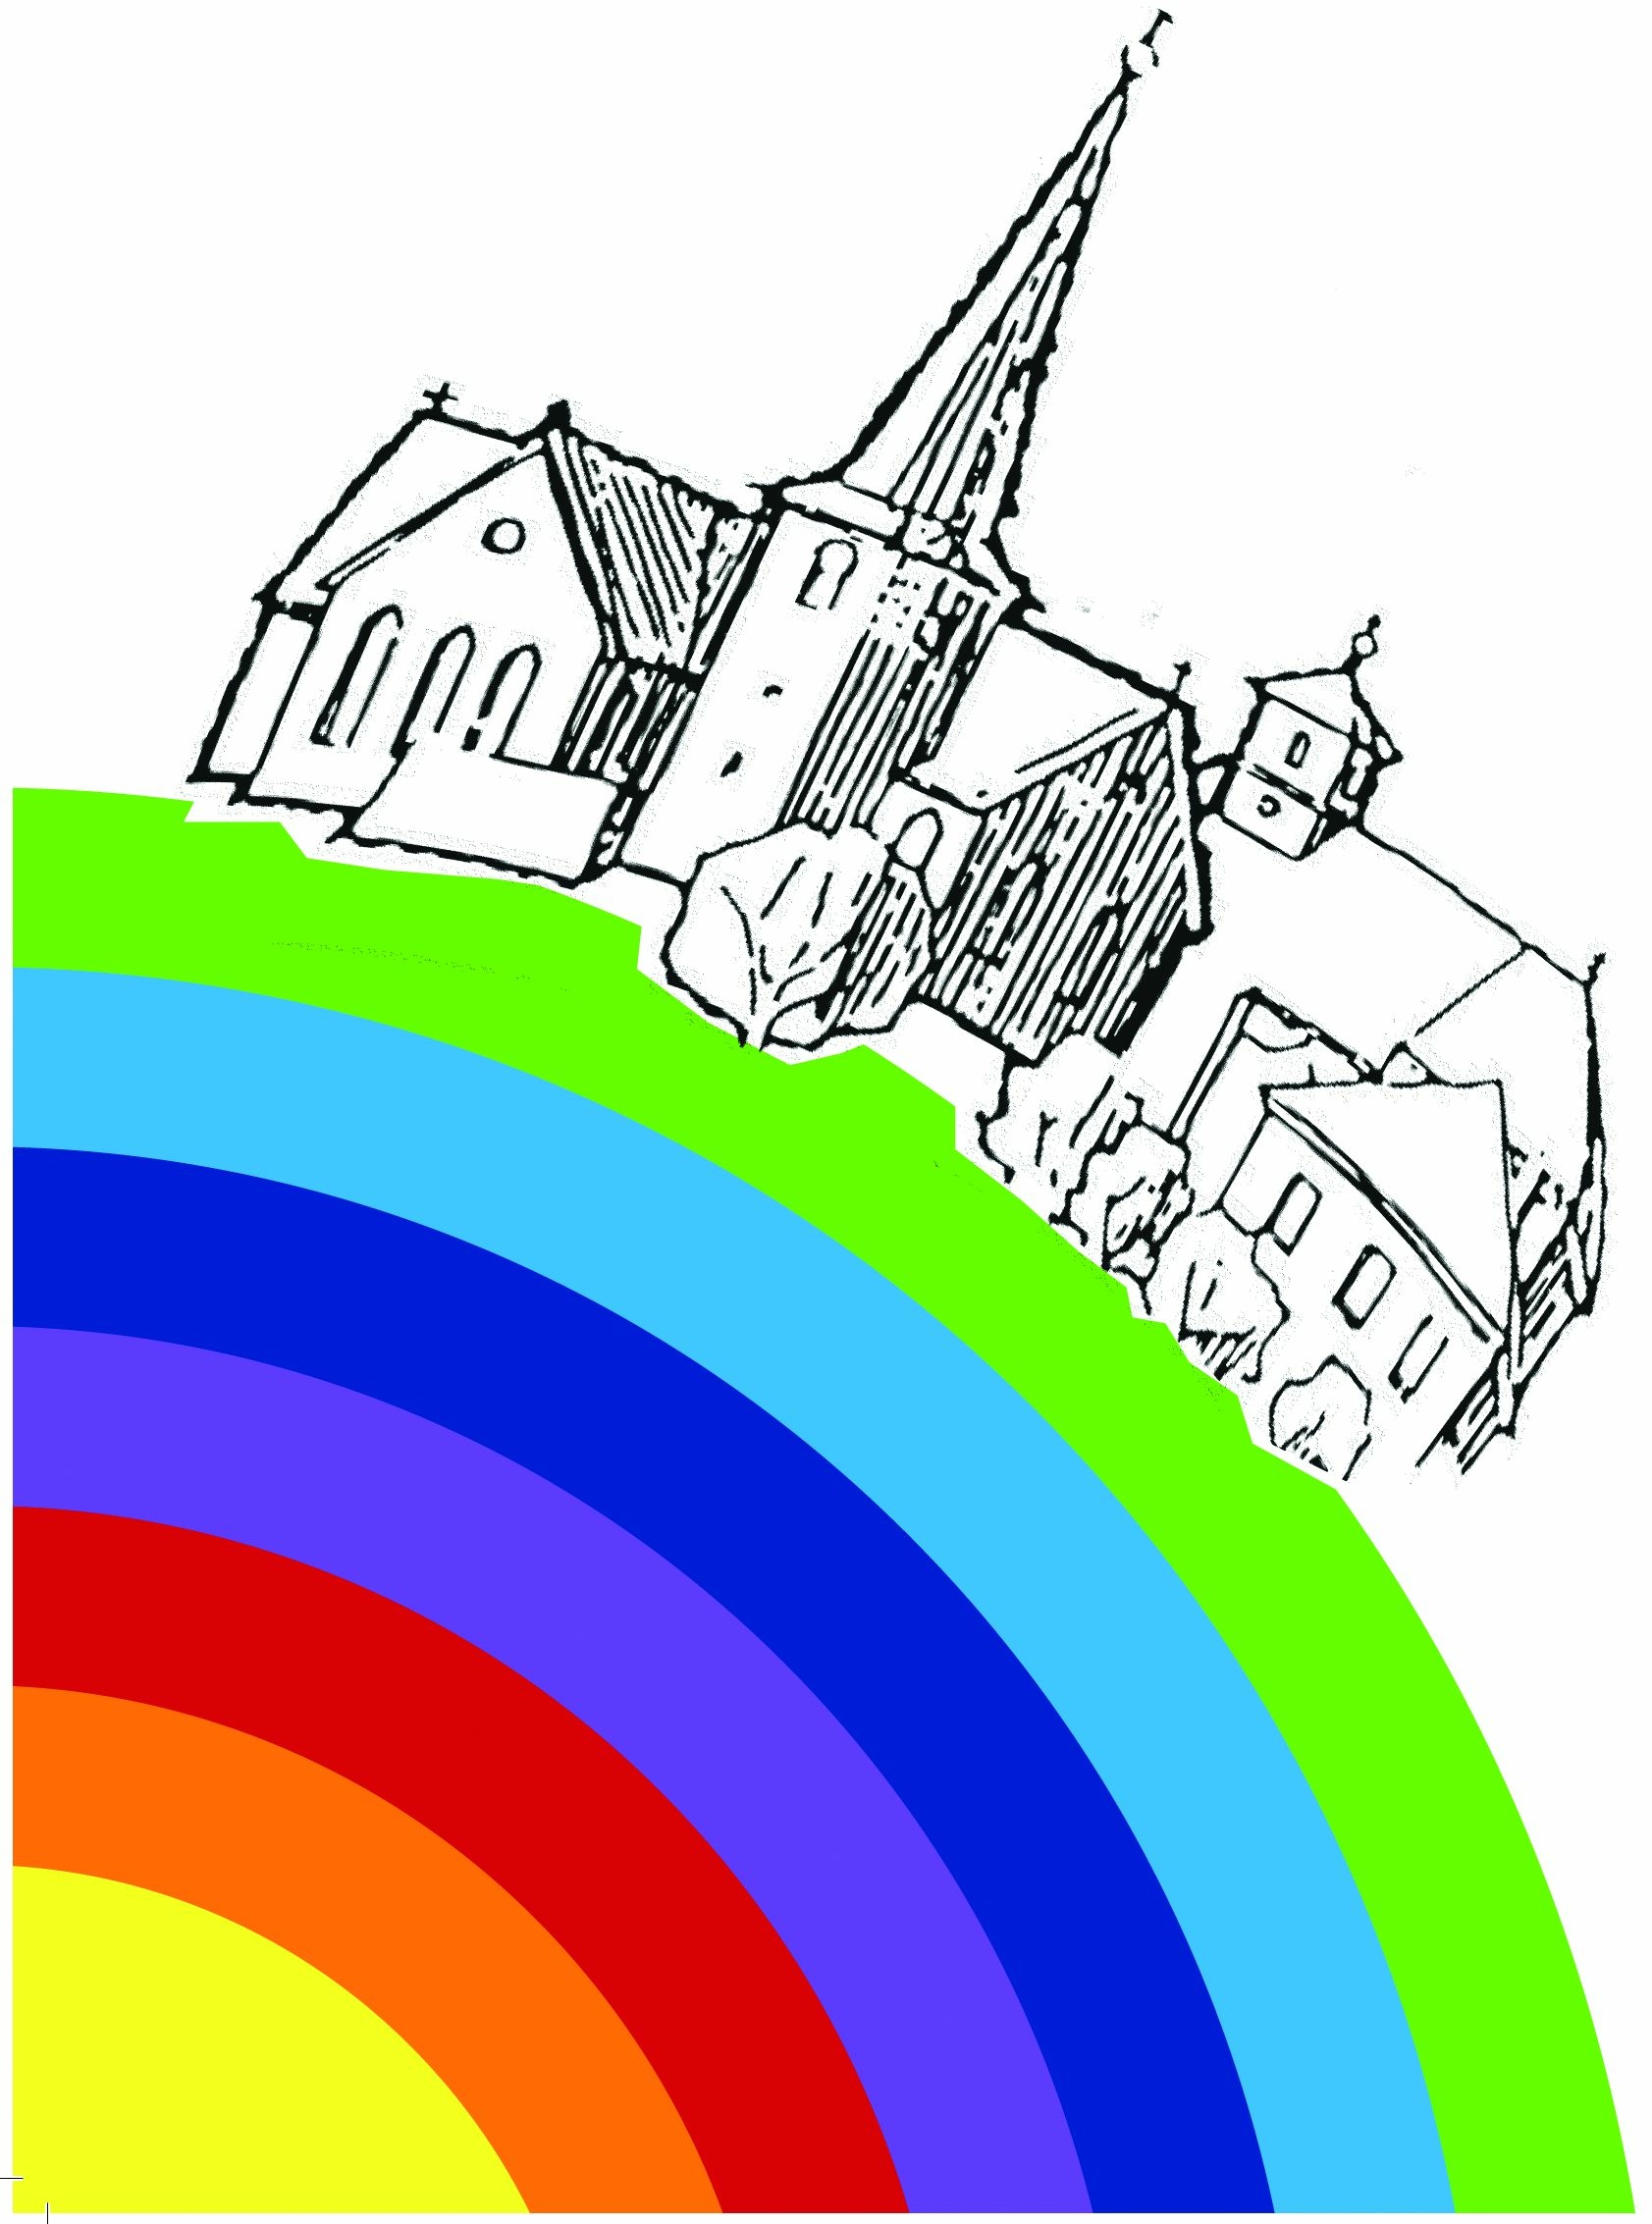 Kigo Kirche Regenbogen frst